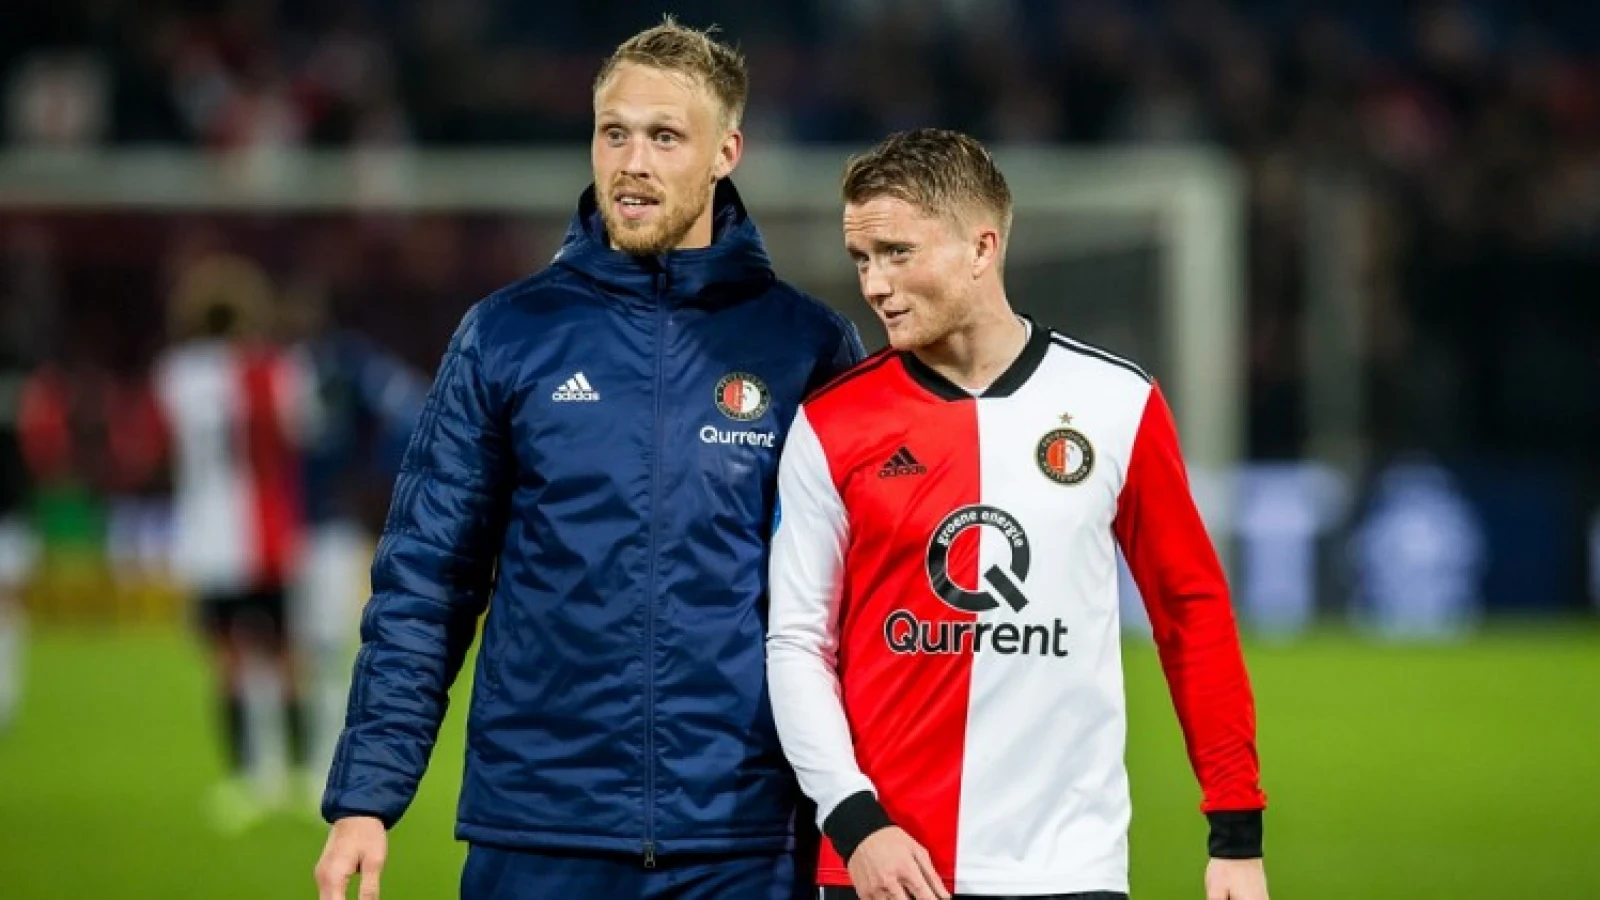 Van der Laan verdedigt Feyenoorder: 'Het is totale onzin!'